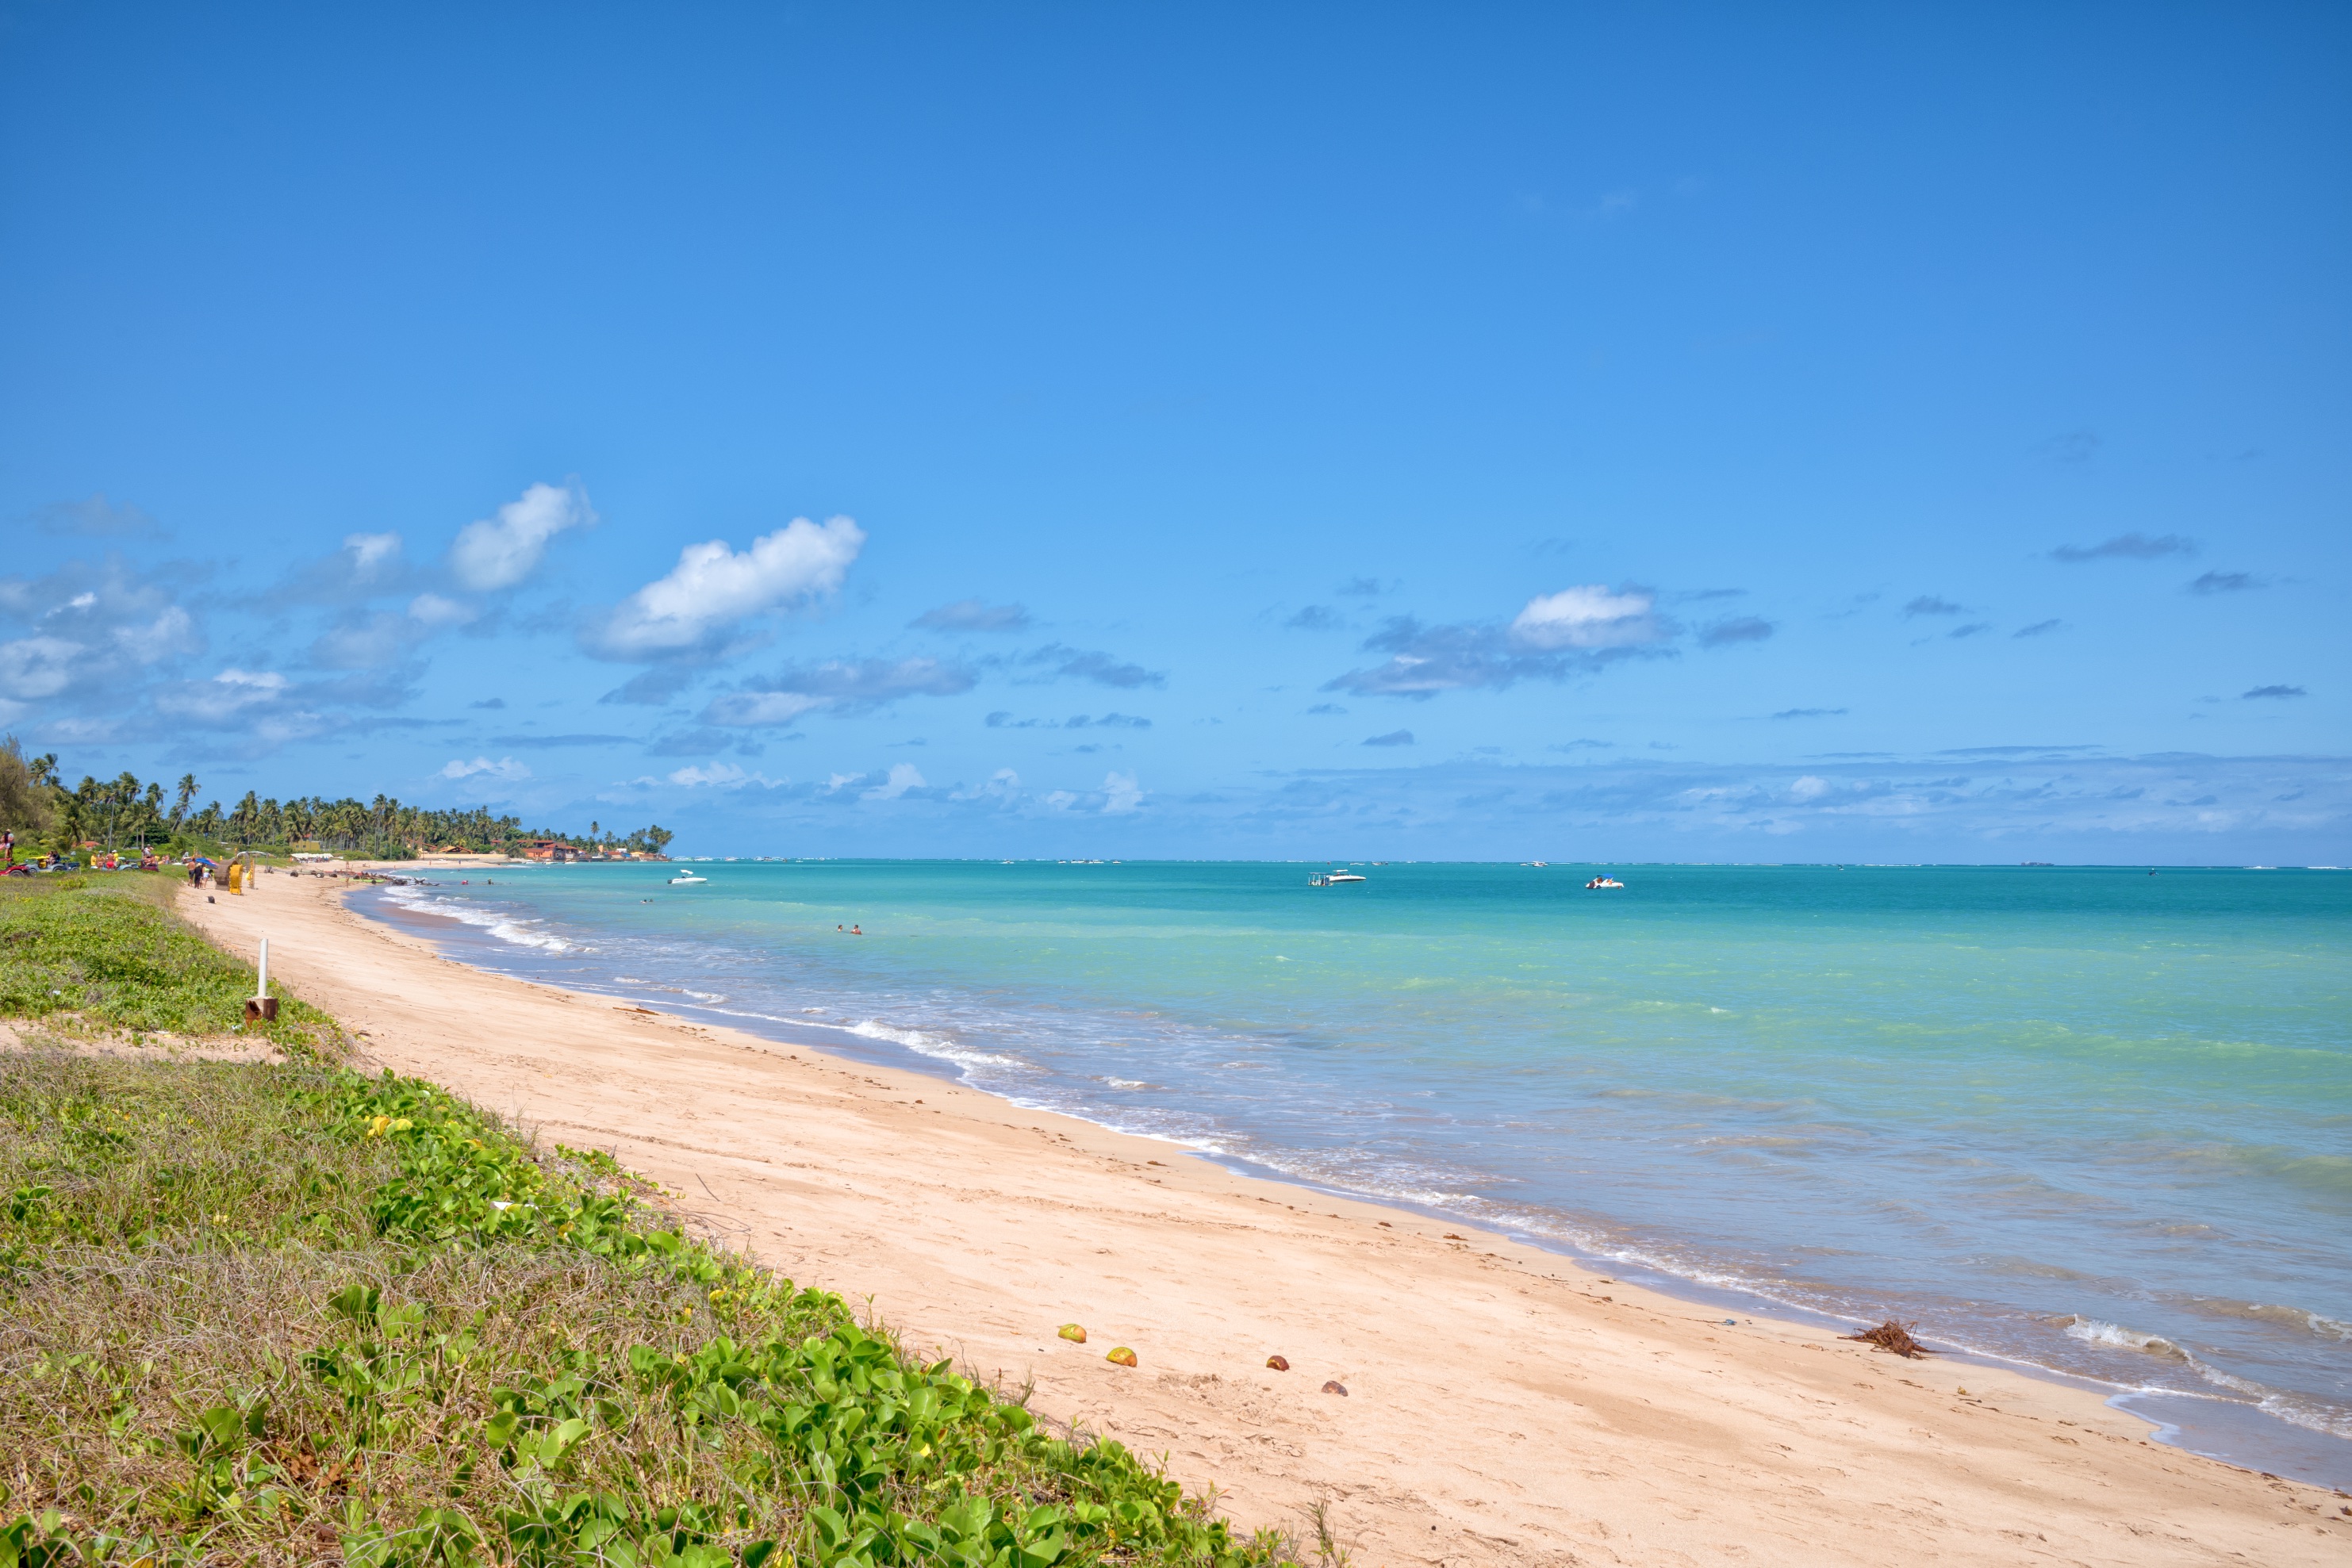 Na fotografia é possível observar uma pequena faixa de areia e um mar azul esverdeado raso e com poucas ondas. A areia é cercada por vegetação e o céu é azul e com poucas nuvens.